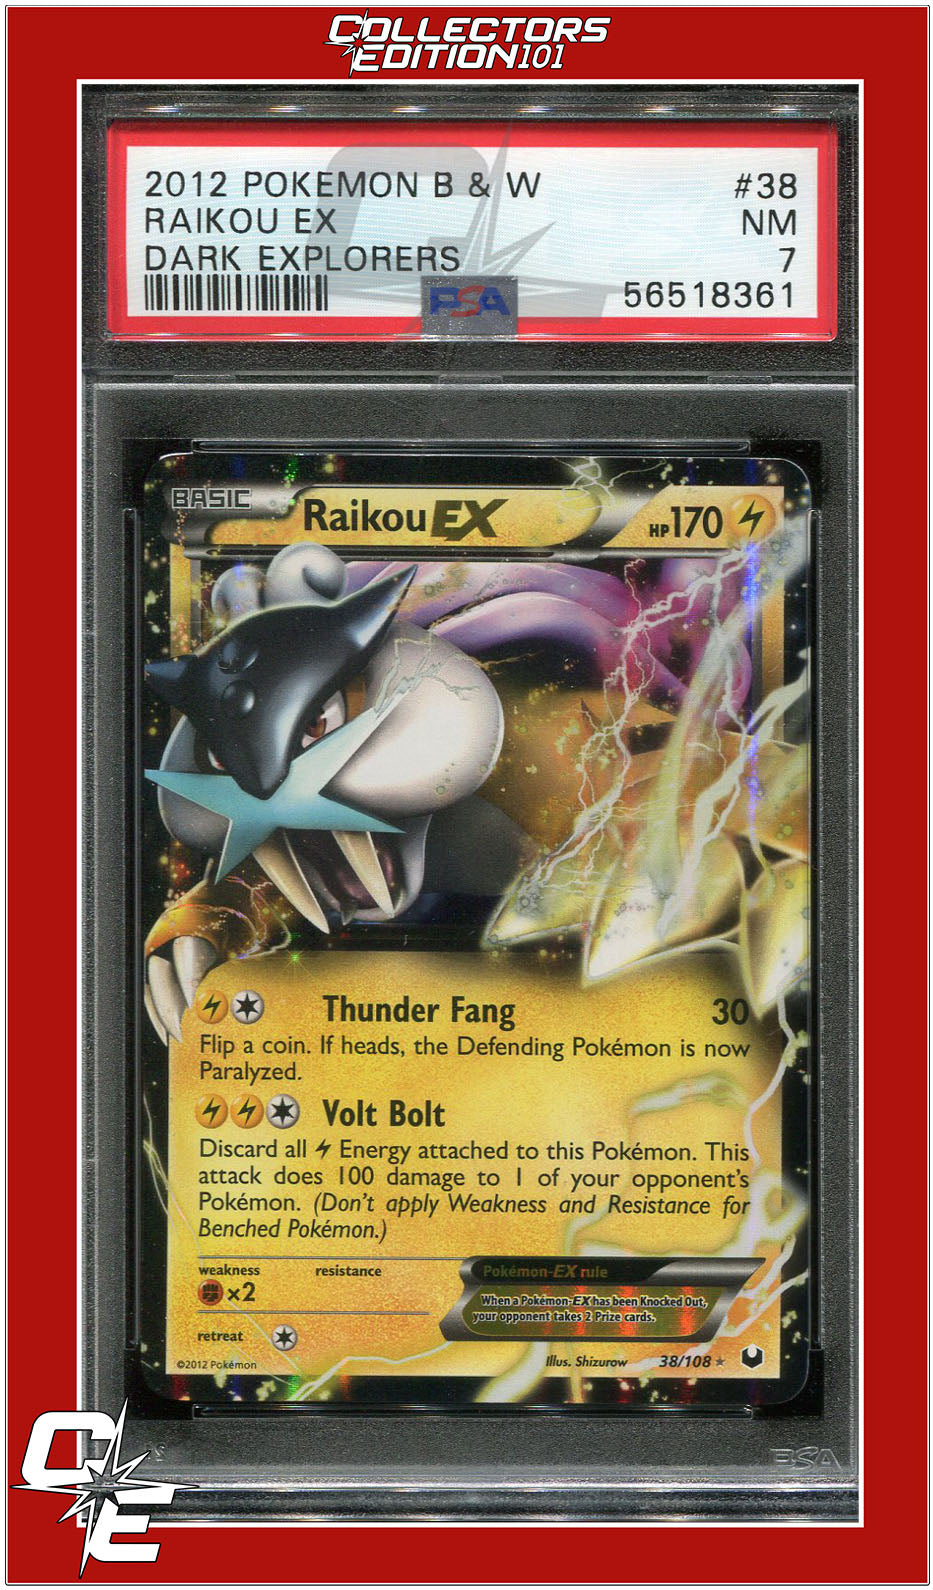 Raikou-EX (38/108), Busca de Cards